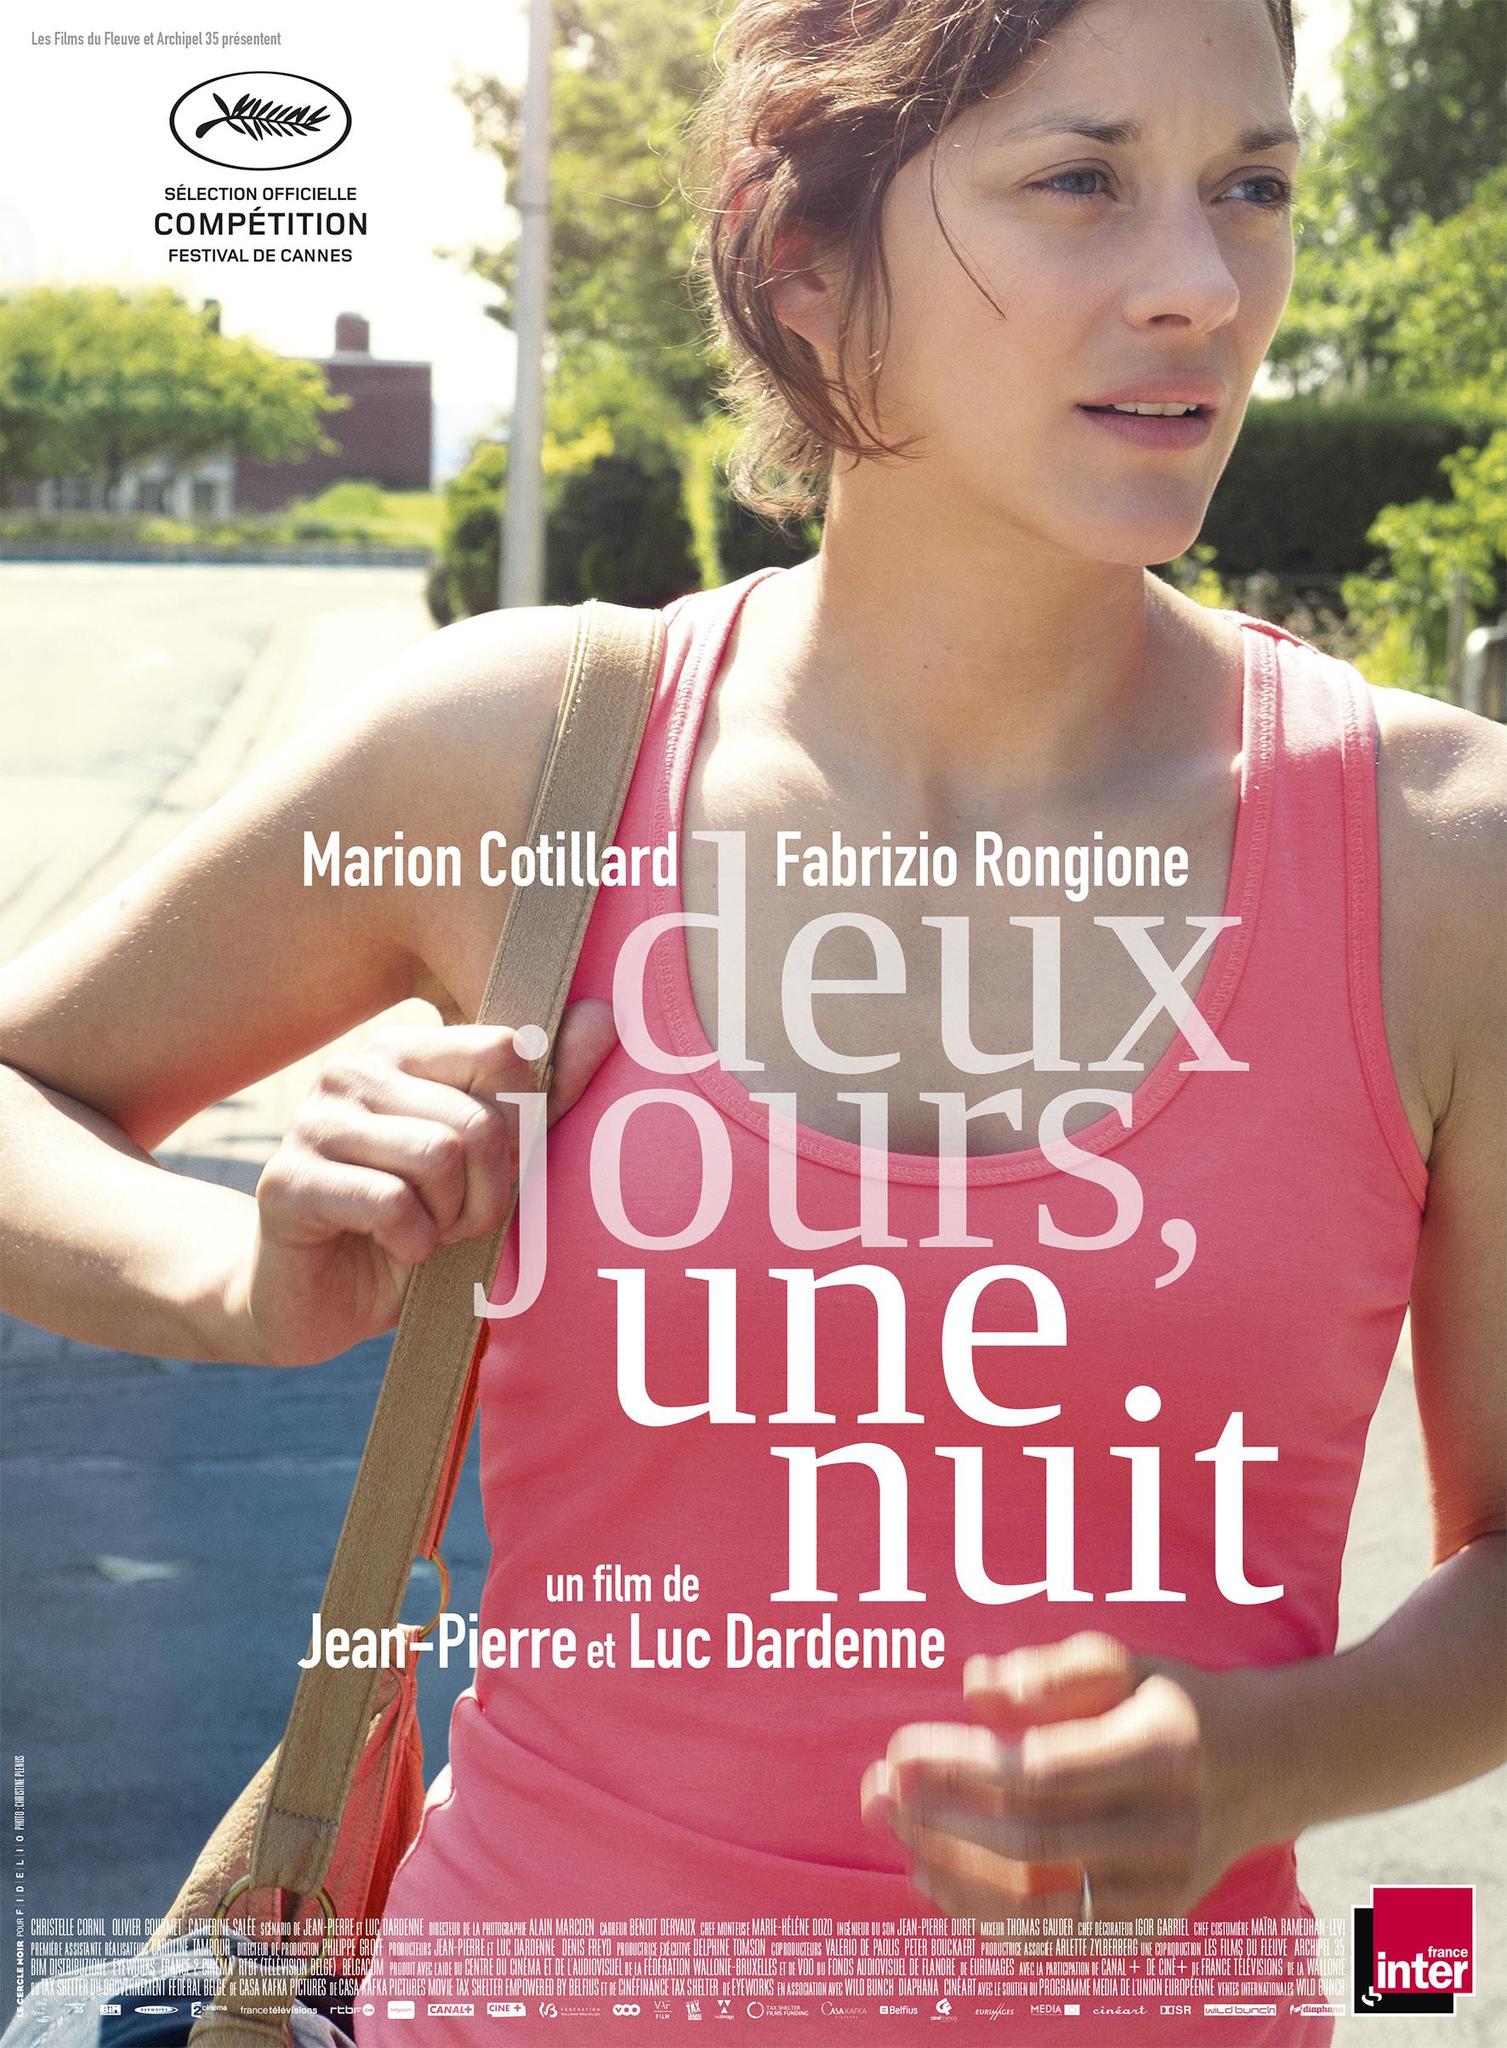 Marion Cotillard in Deux jours, une nuit (2014)